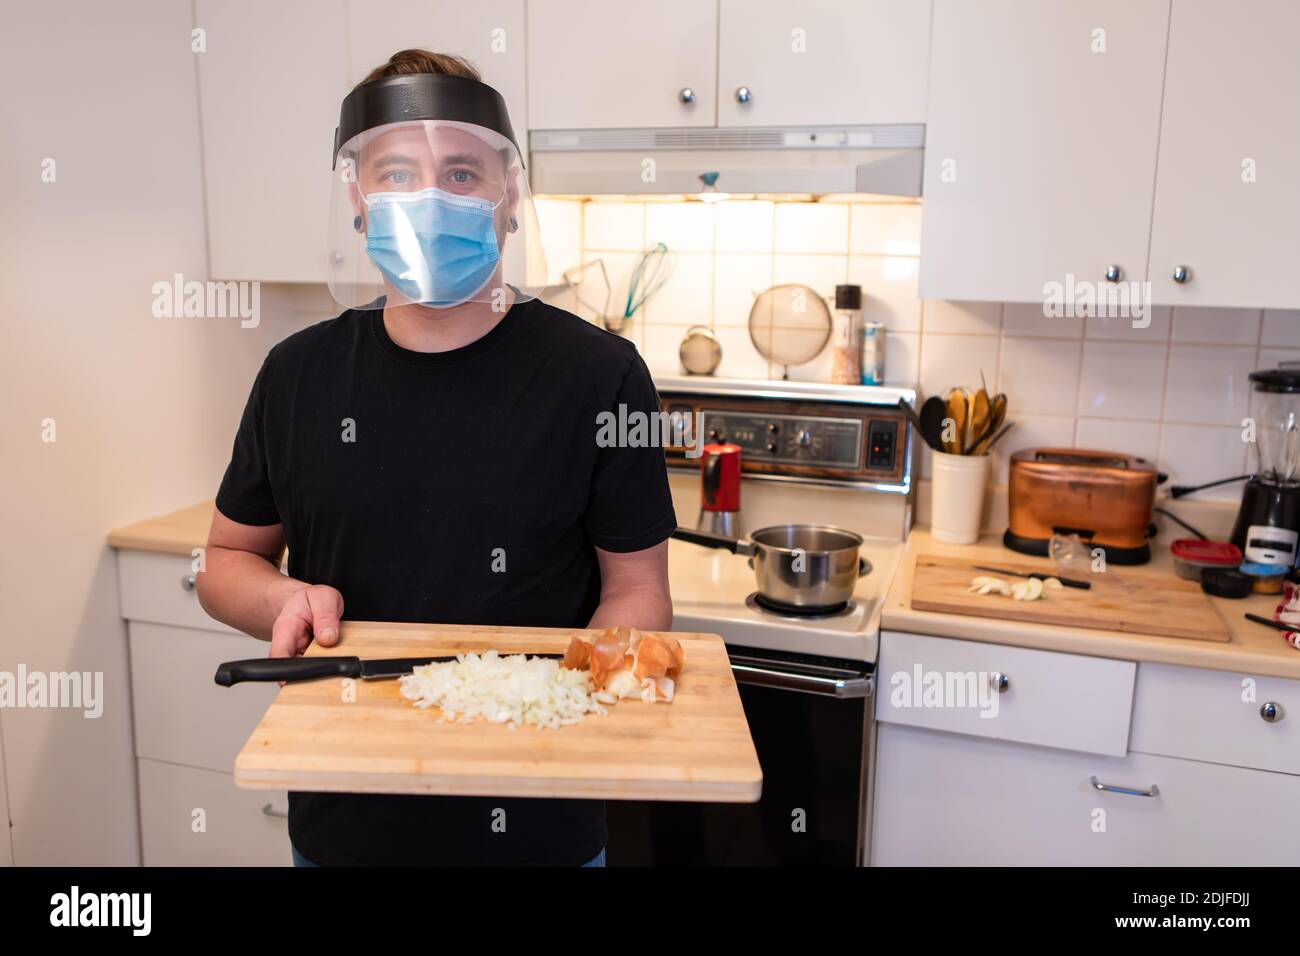 Mittlere Nahaufnahme eines jungen Mannes in einer Küche, der ein Schneidebrett mit gewürfeltem Gemüse hält, eine Covid-Schutzmaske und ein Plastikvisier trägt Stockfoto